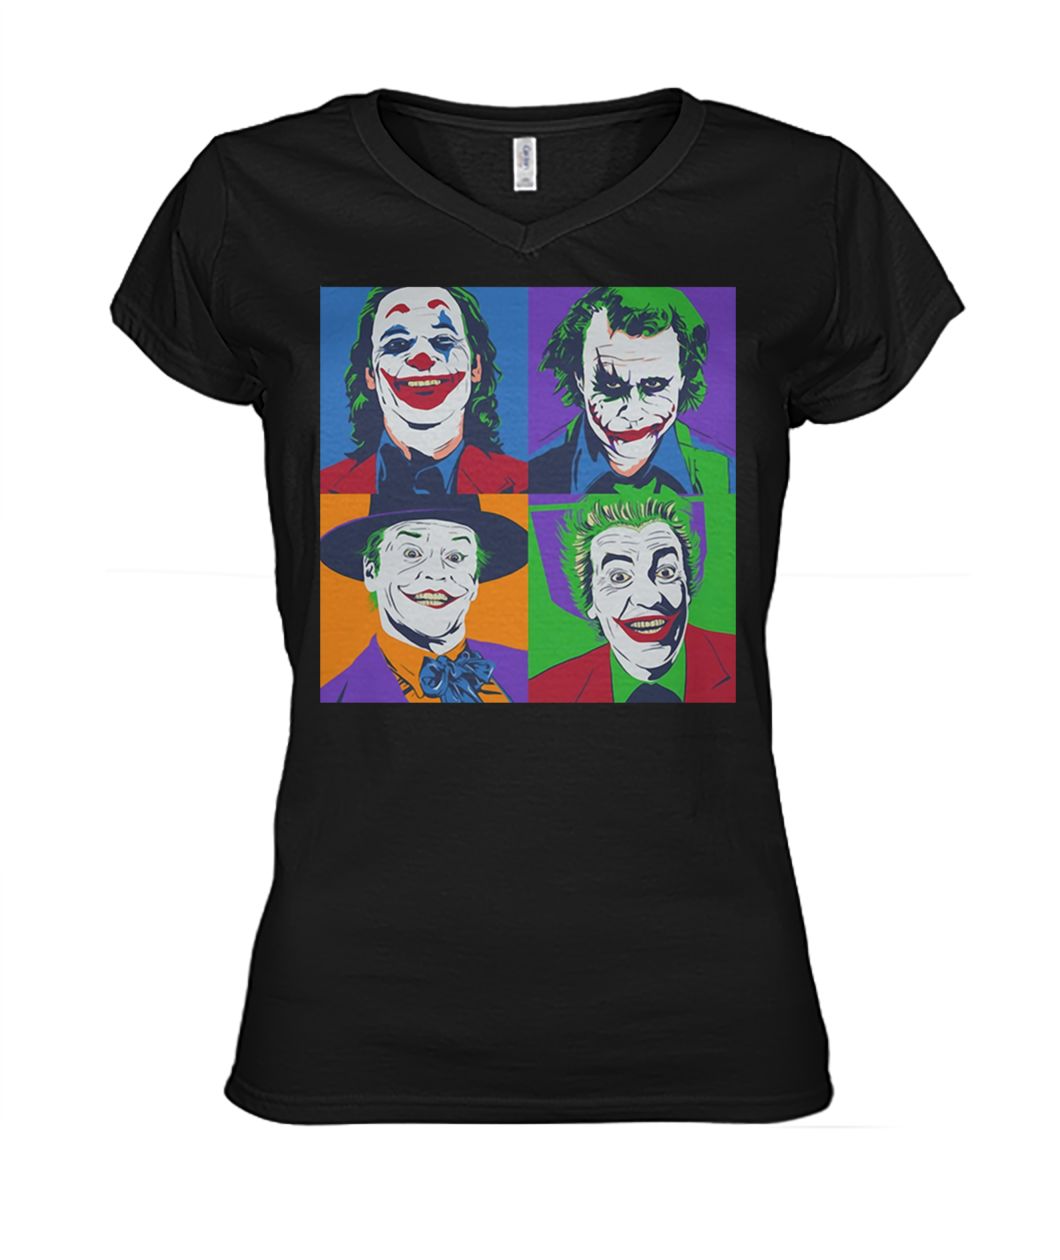 Joker pop art women's v-neck